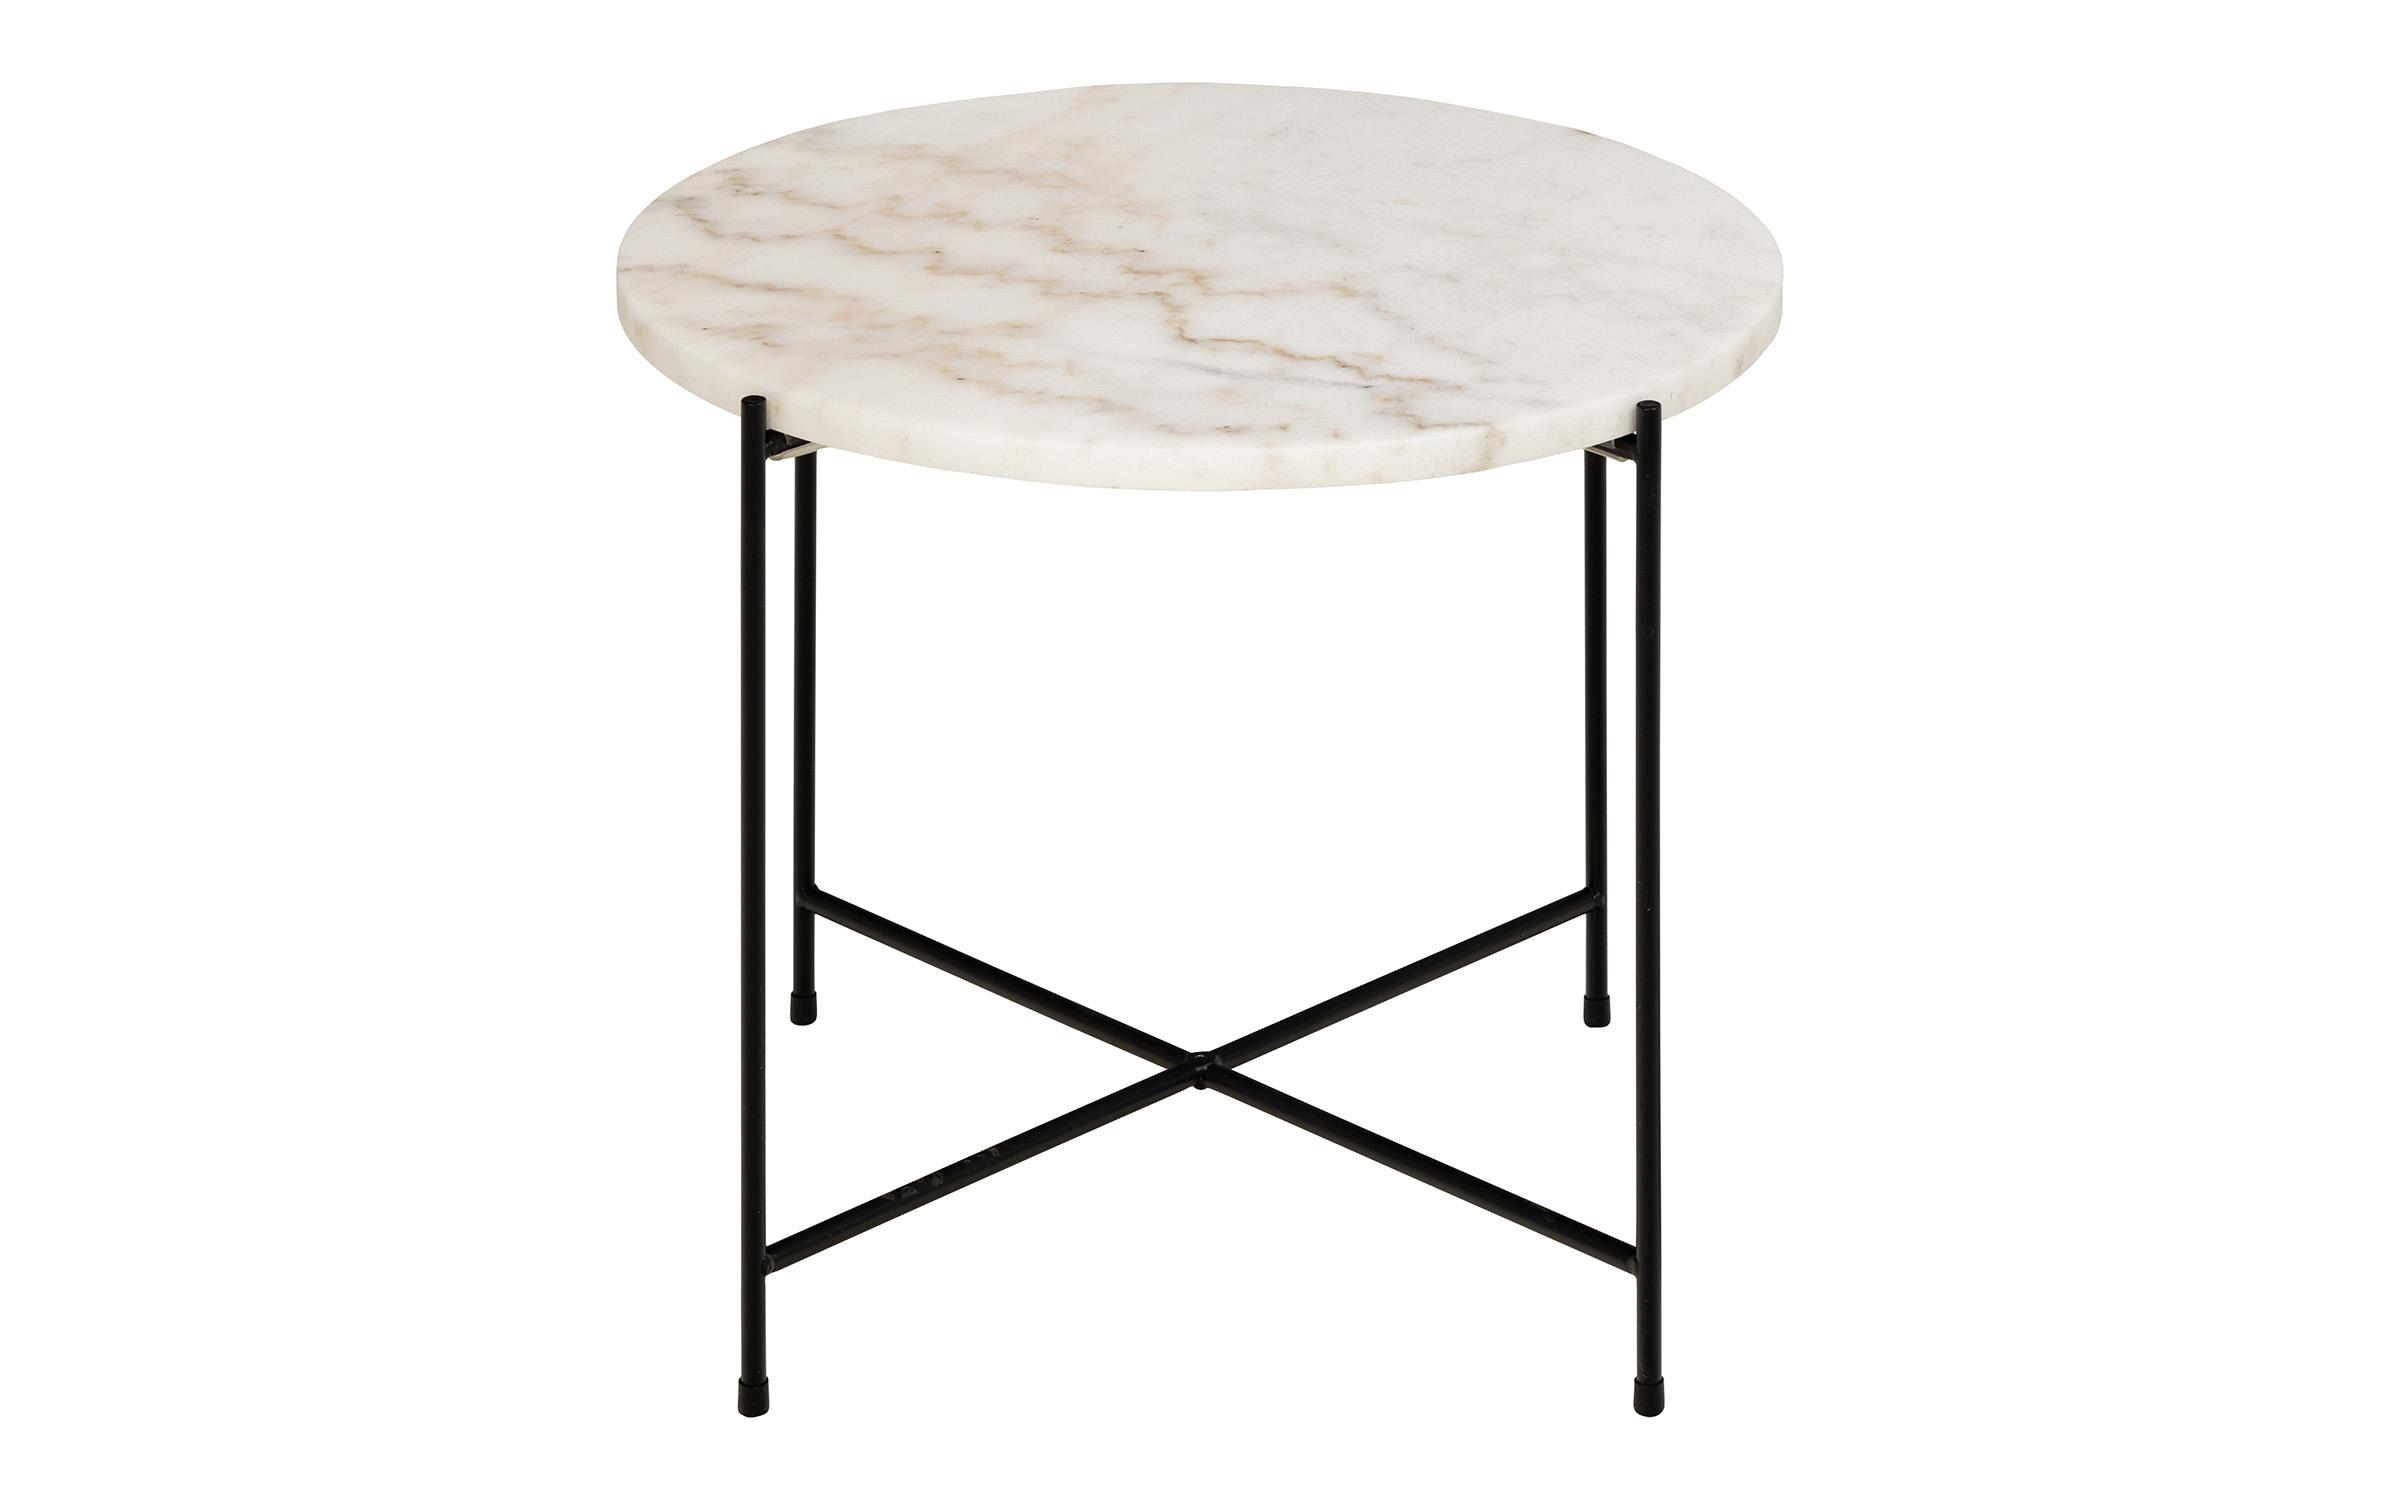 Tavolinë anësore Avila, mermer i bardhë  2